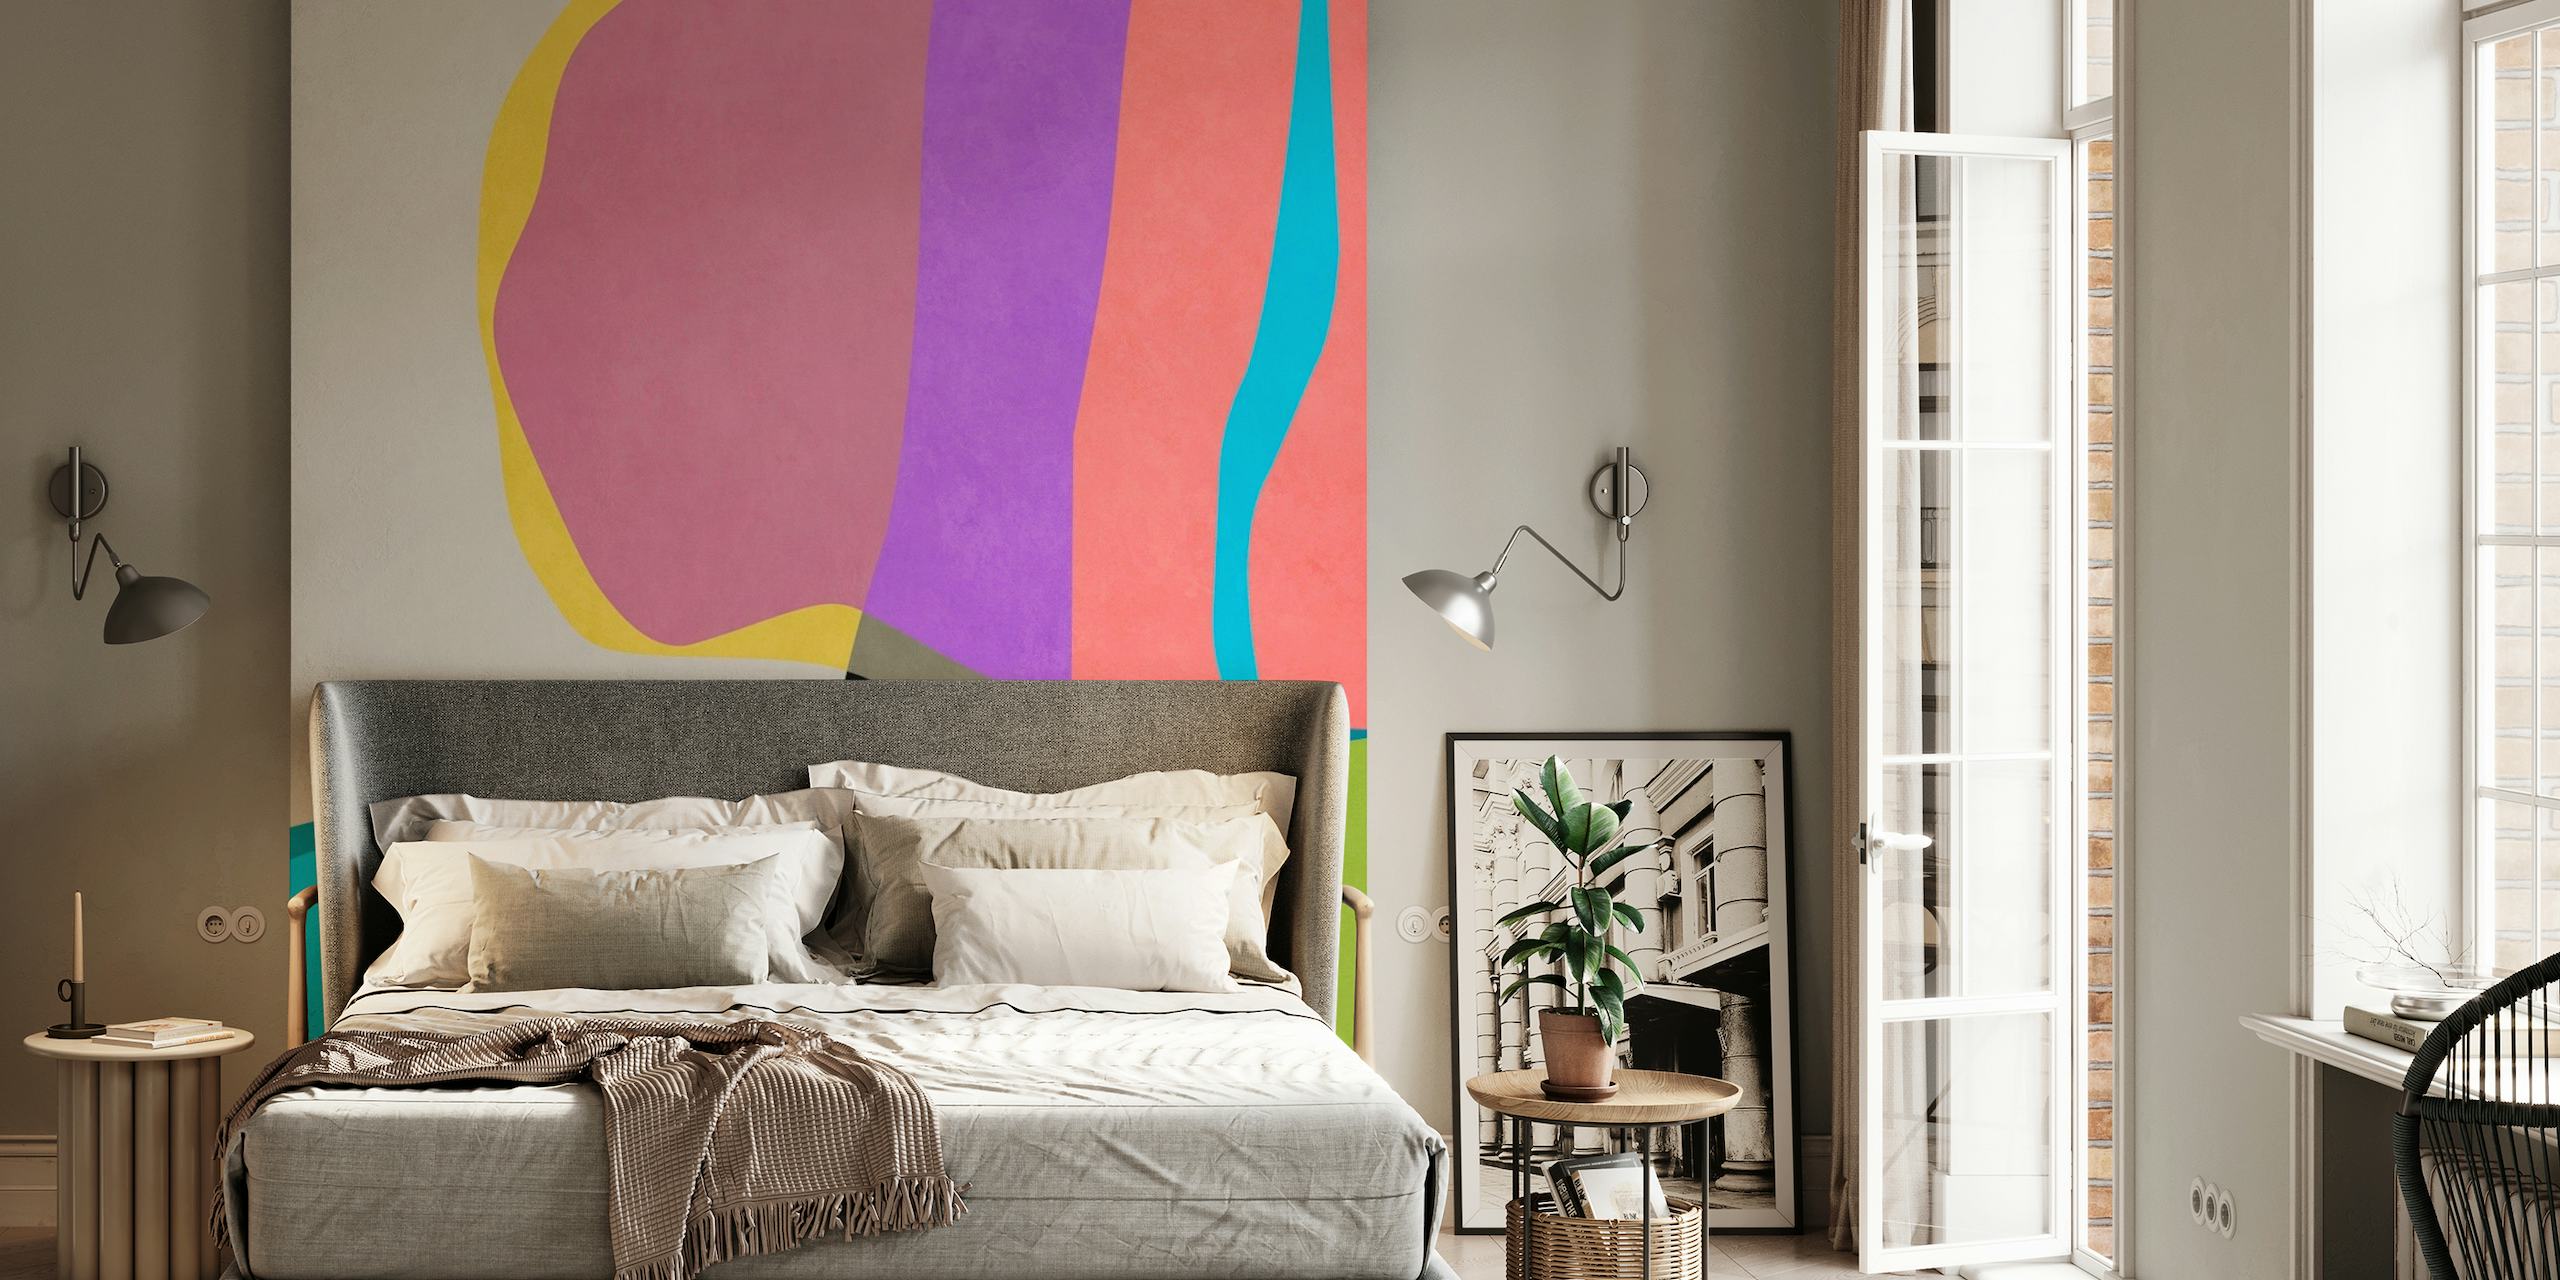 Abstrakt vægmaleri med levende farver og flydende former, der skaber en følelse af bevægelse